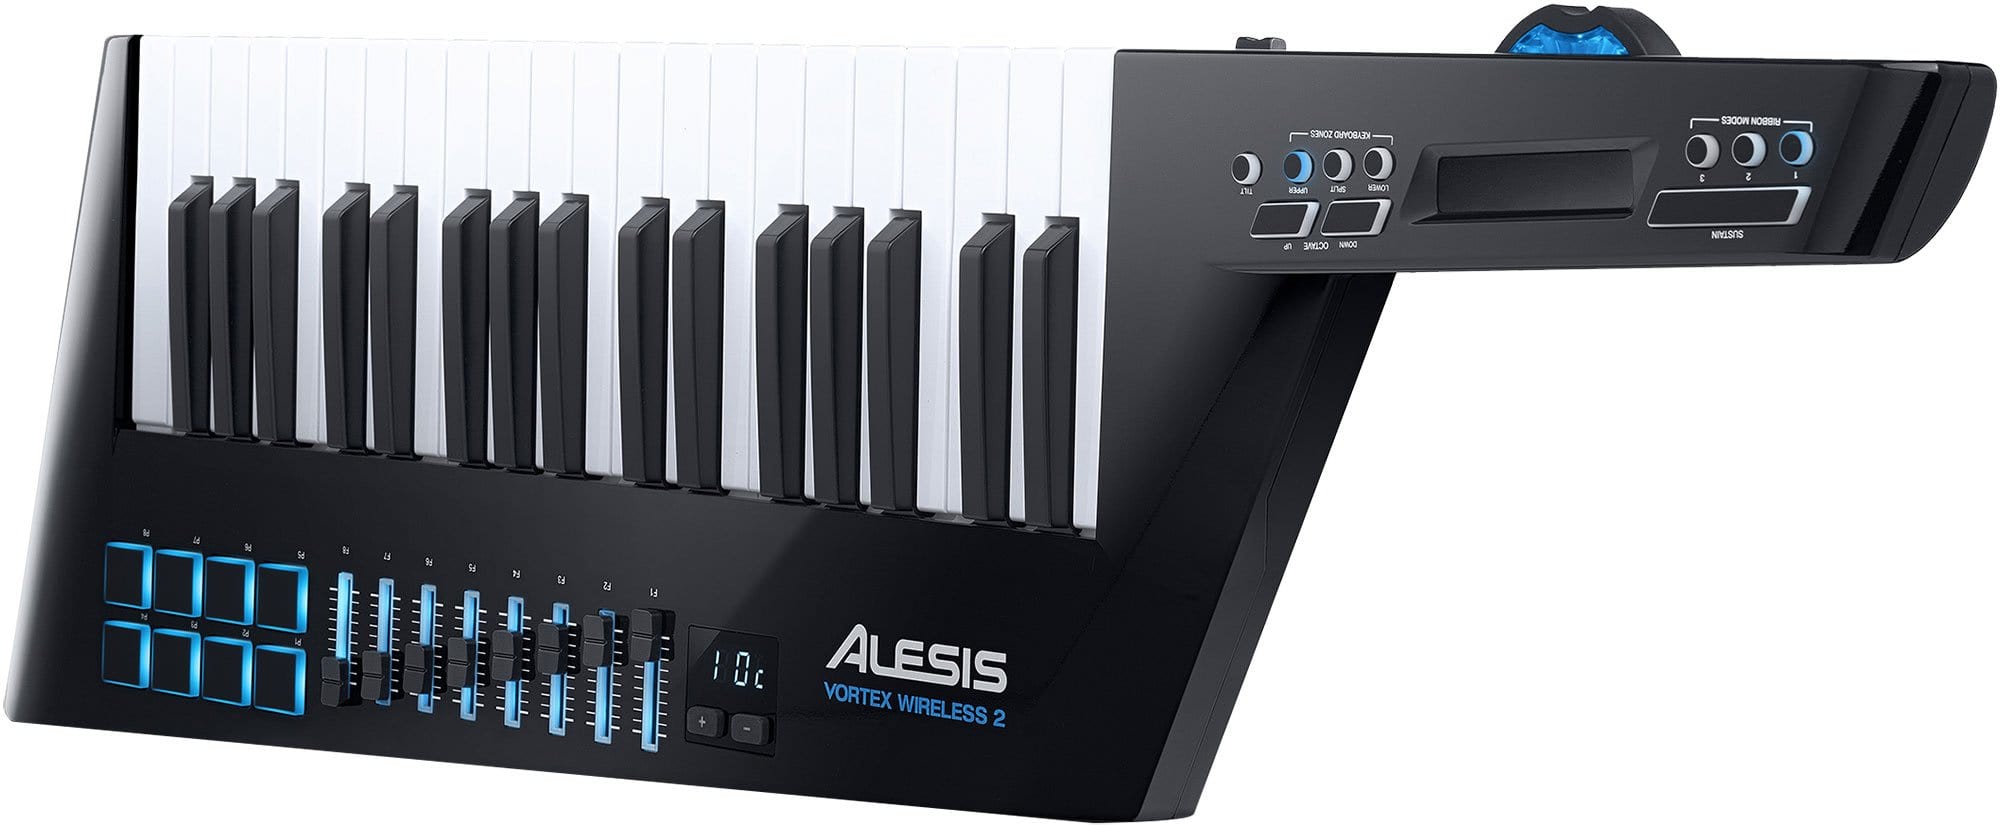 Alesis Vortex Wireless 2 USB MIDI Keytar Controller